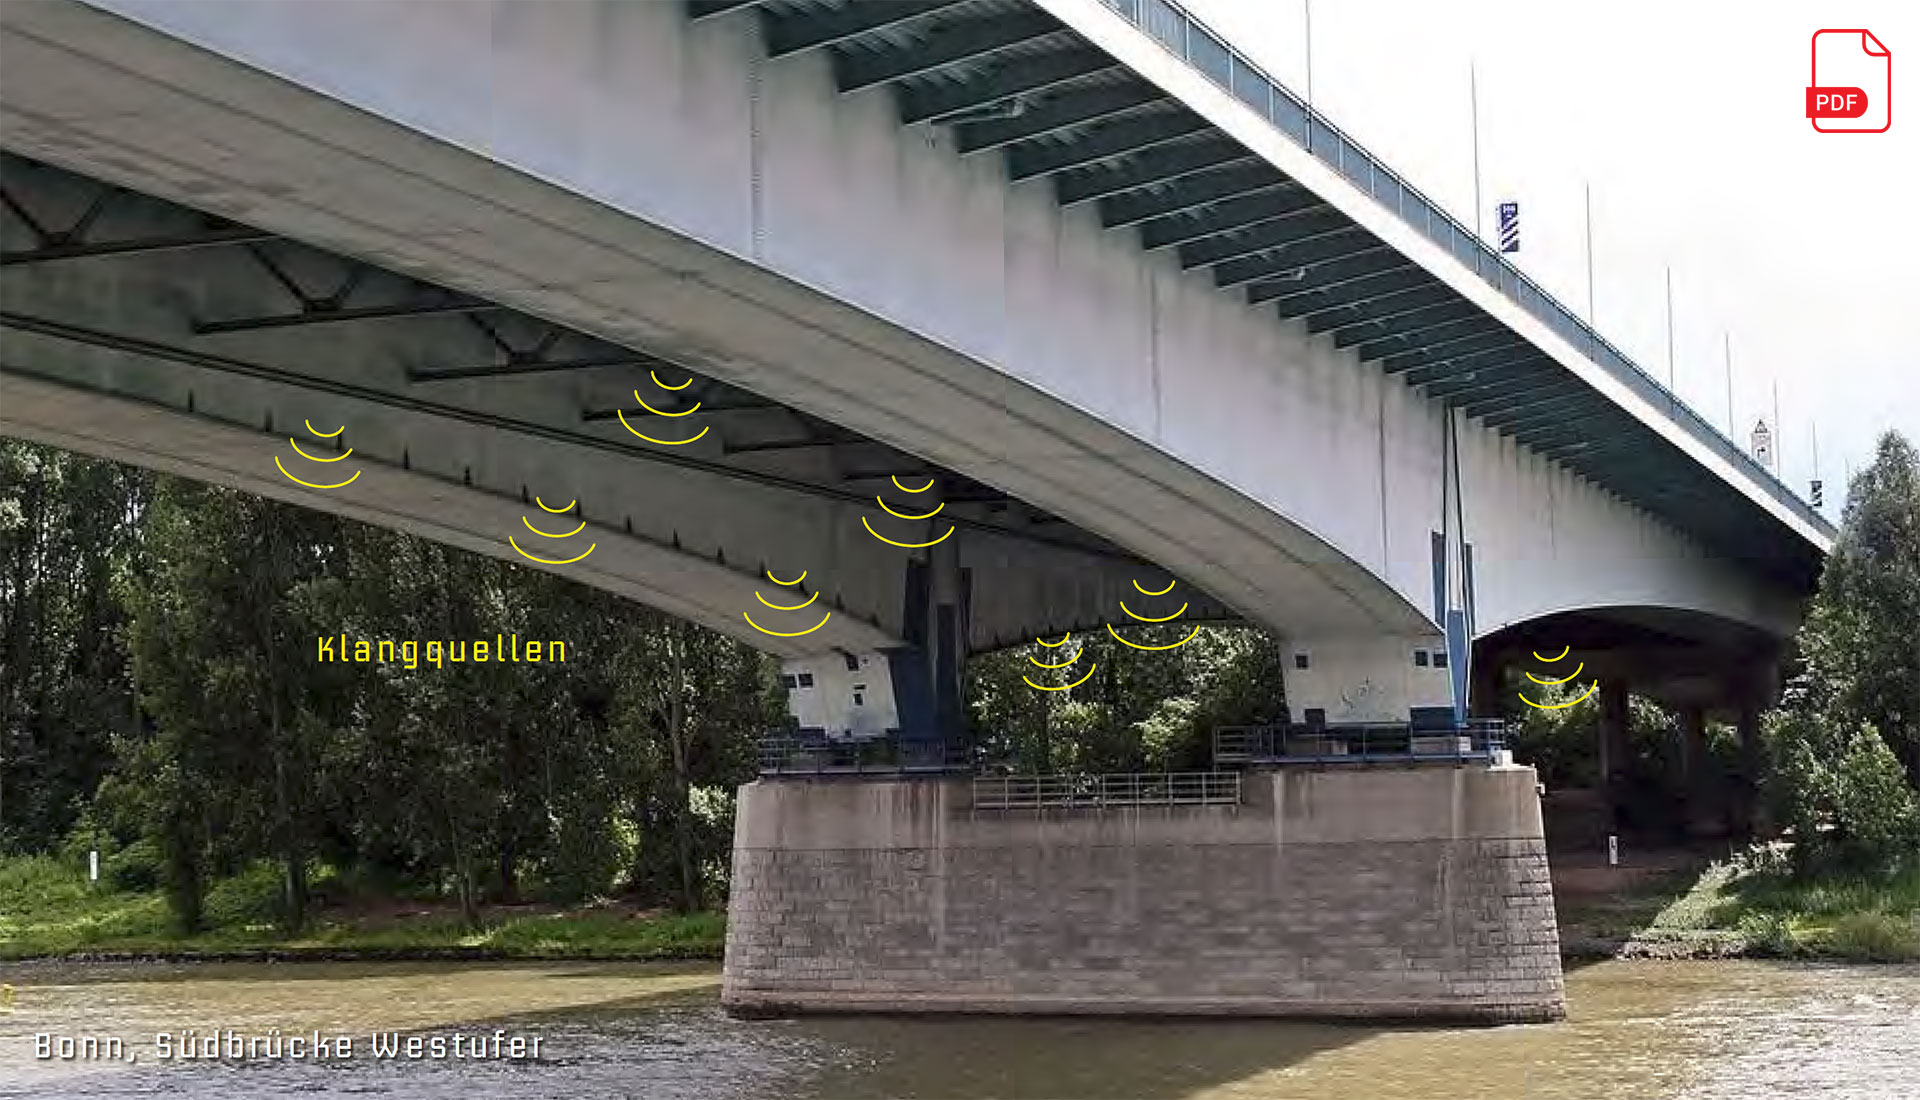 Visualization of the sound installation under the Rhine bridge in Bonn